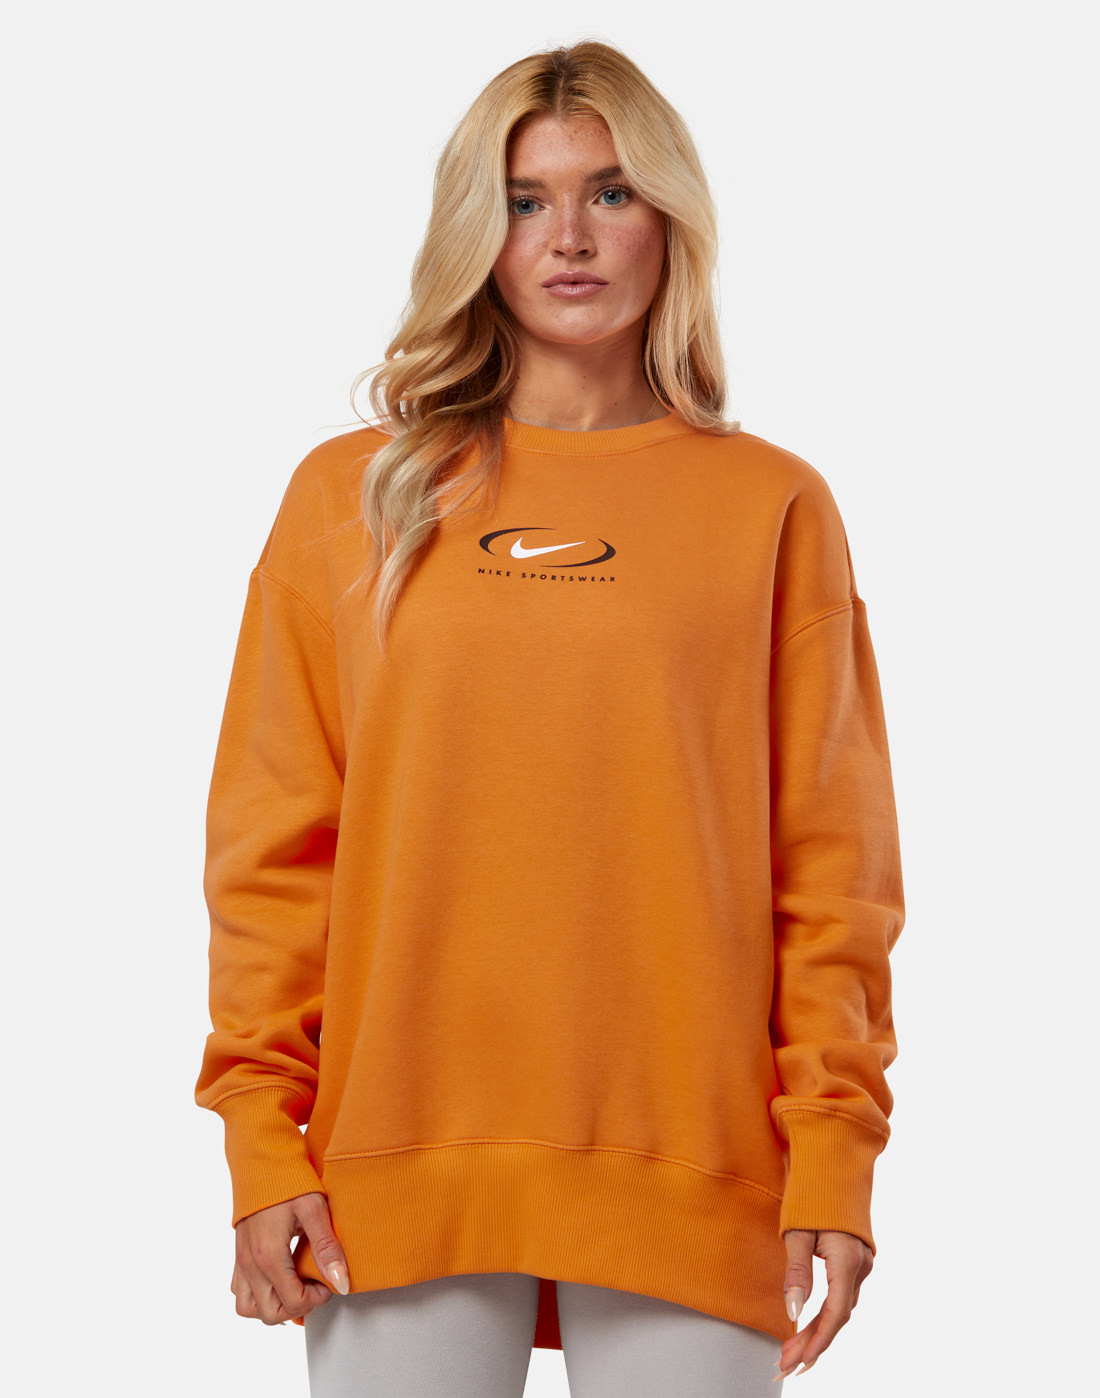 Nike Womens Phoenix Fleece Crew Neck Sweatshirt - Orange | Life Style ...